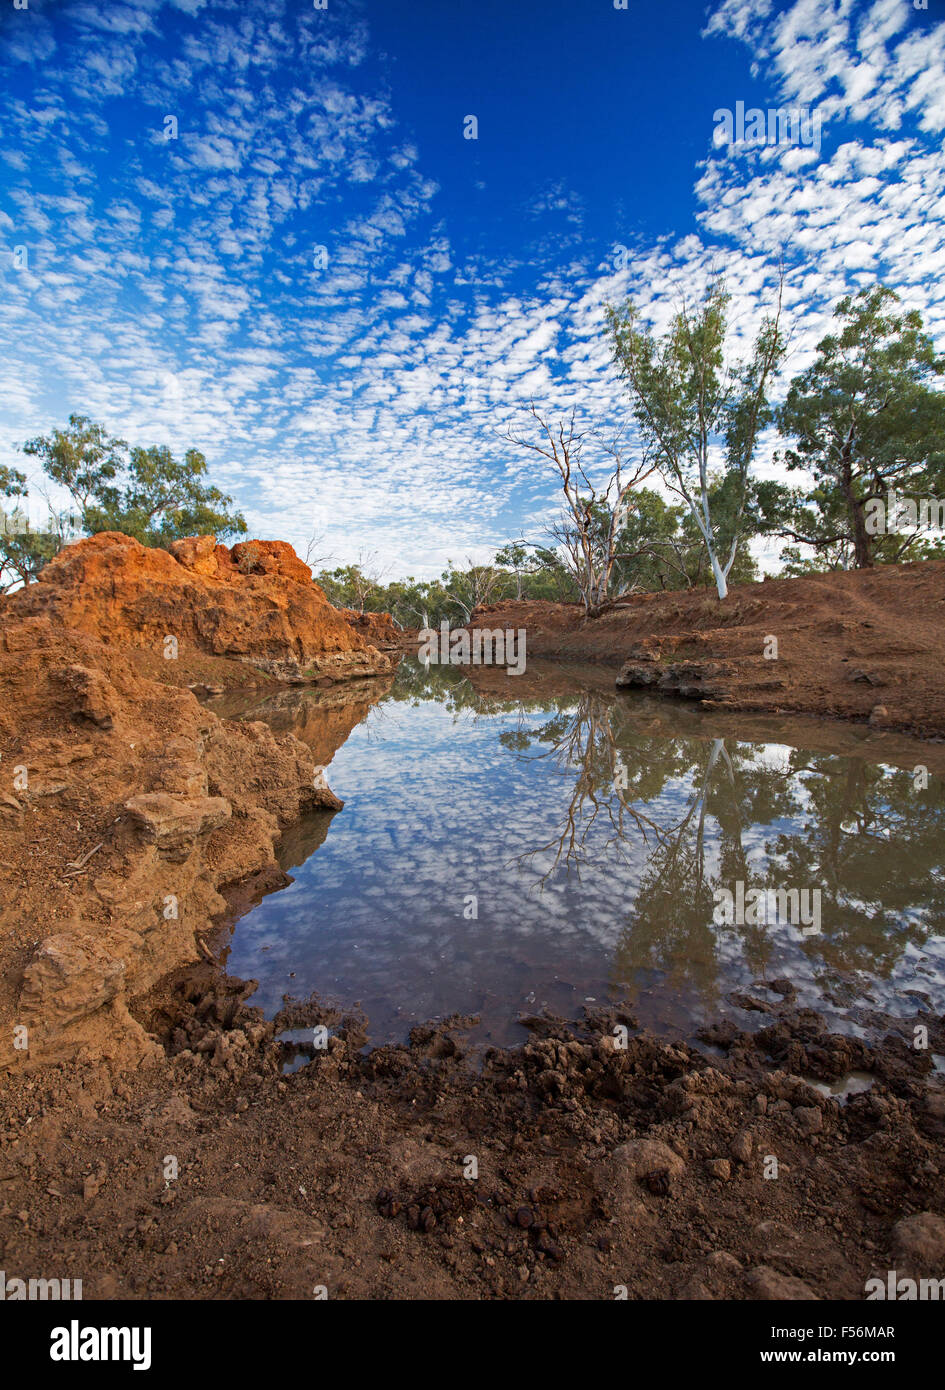 Impresionante paisaje outback, cielo azul con nubes pecoso se refleja en la superficie del espejo de agua rodeado por escarpadas rocas rojas Foto de stock